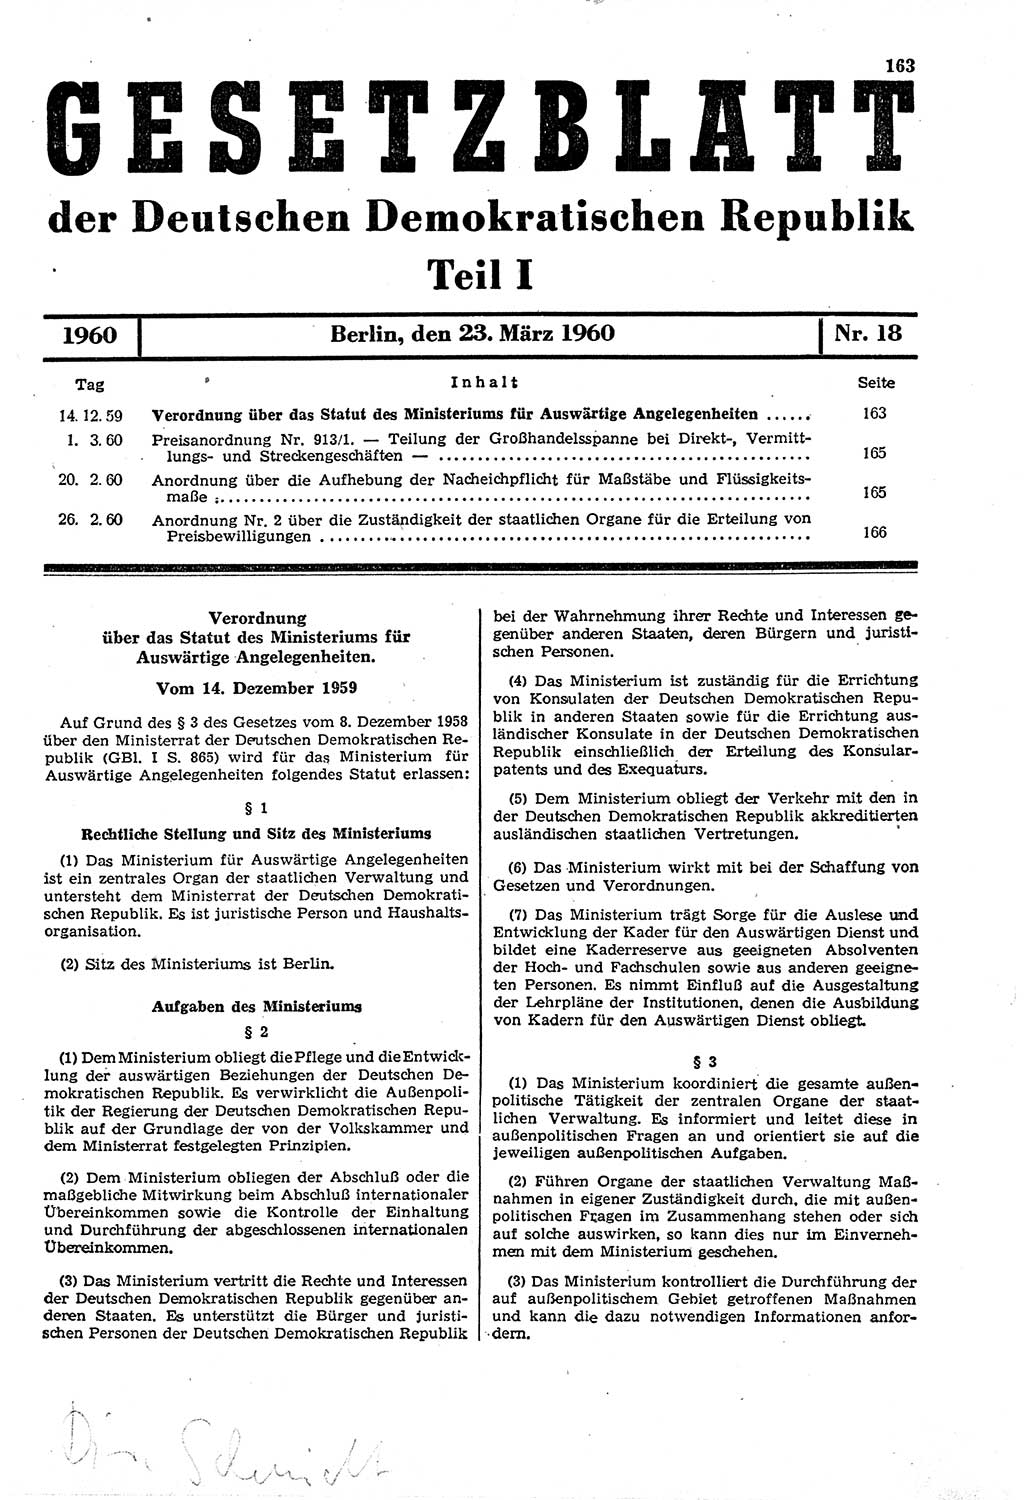 Gesetzblatt (GBl.) der Deutschen Demokratischen Republik (DDR) Teil Ⅰ 1960, Seite 163 (GBl. DDR Ⅰ 1960, S. 163)